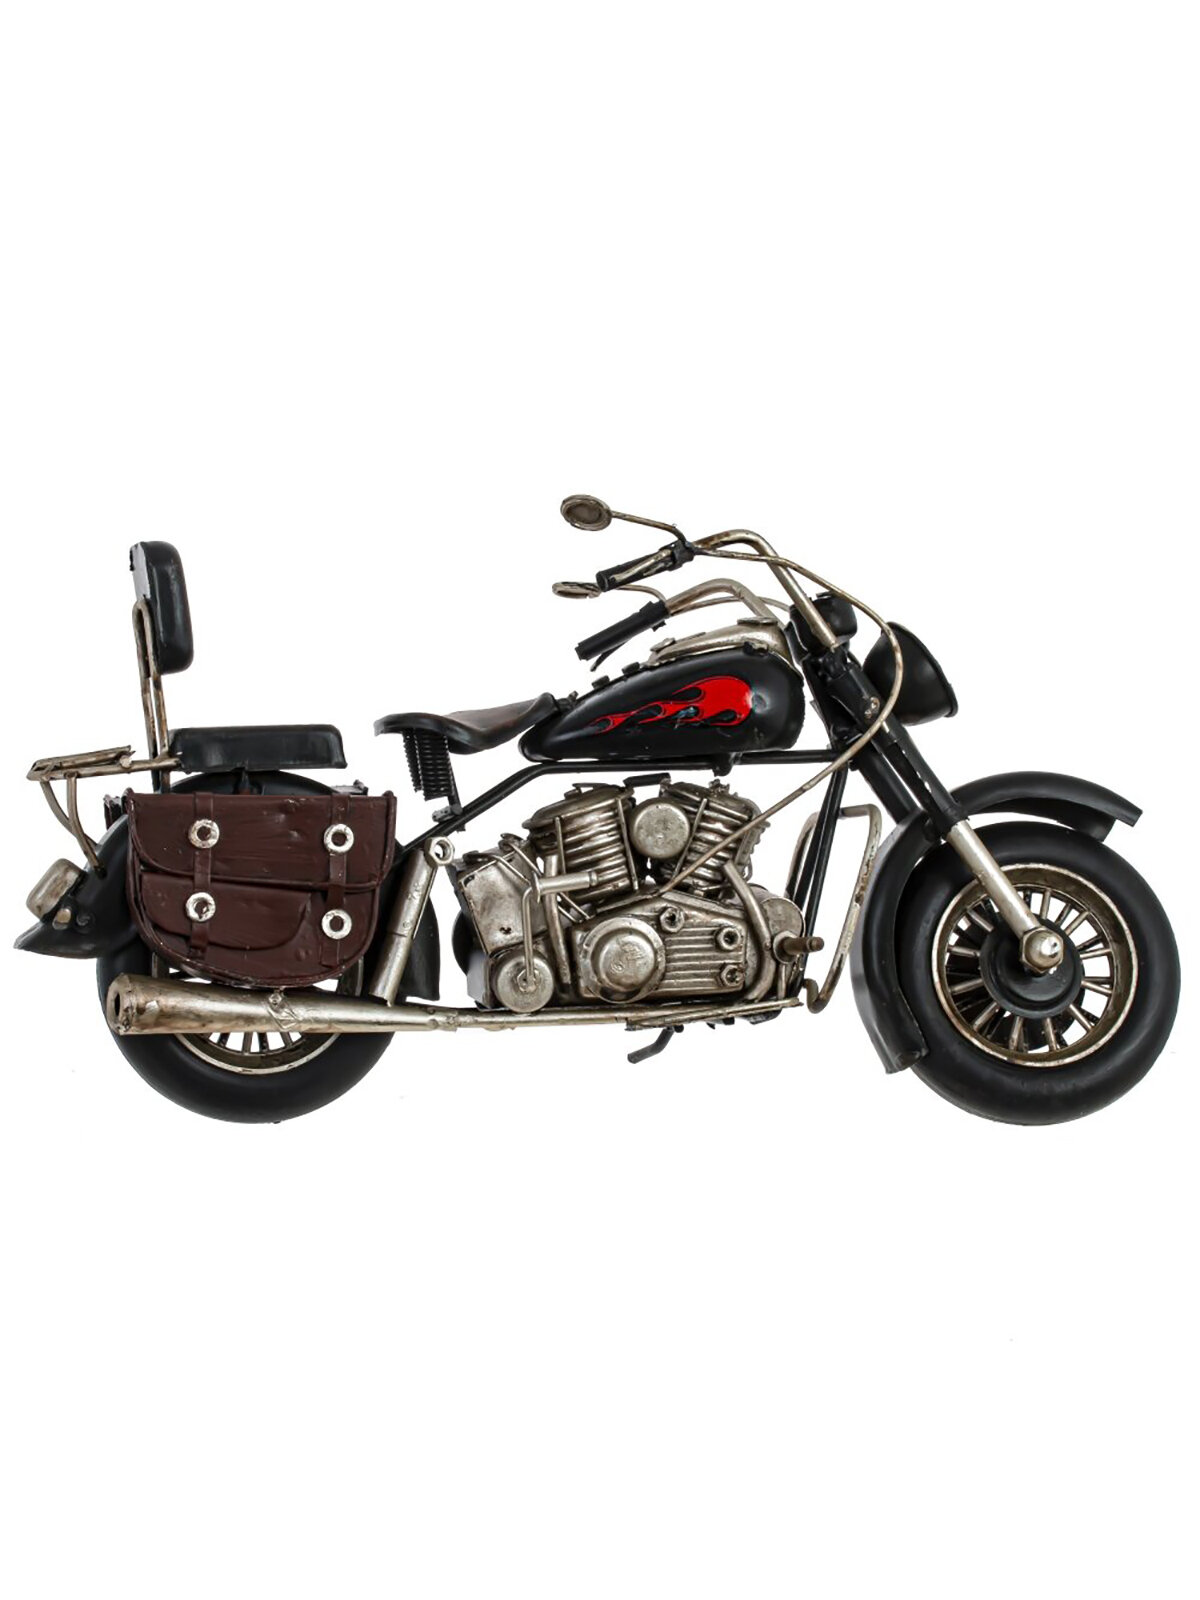 Изделие декоративное Remecoclub Мотоцикл, металлическое, 15x27x9 см